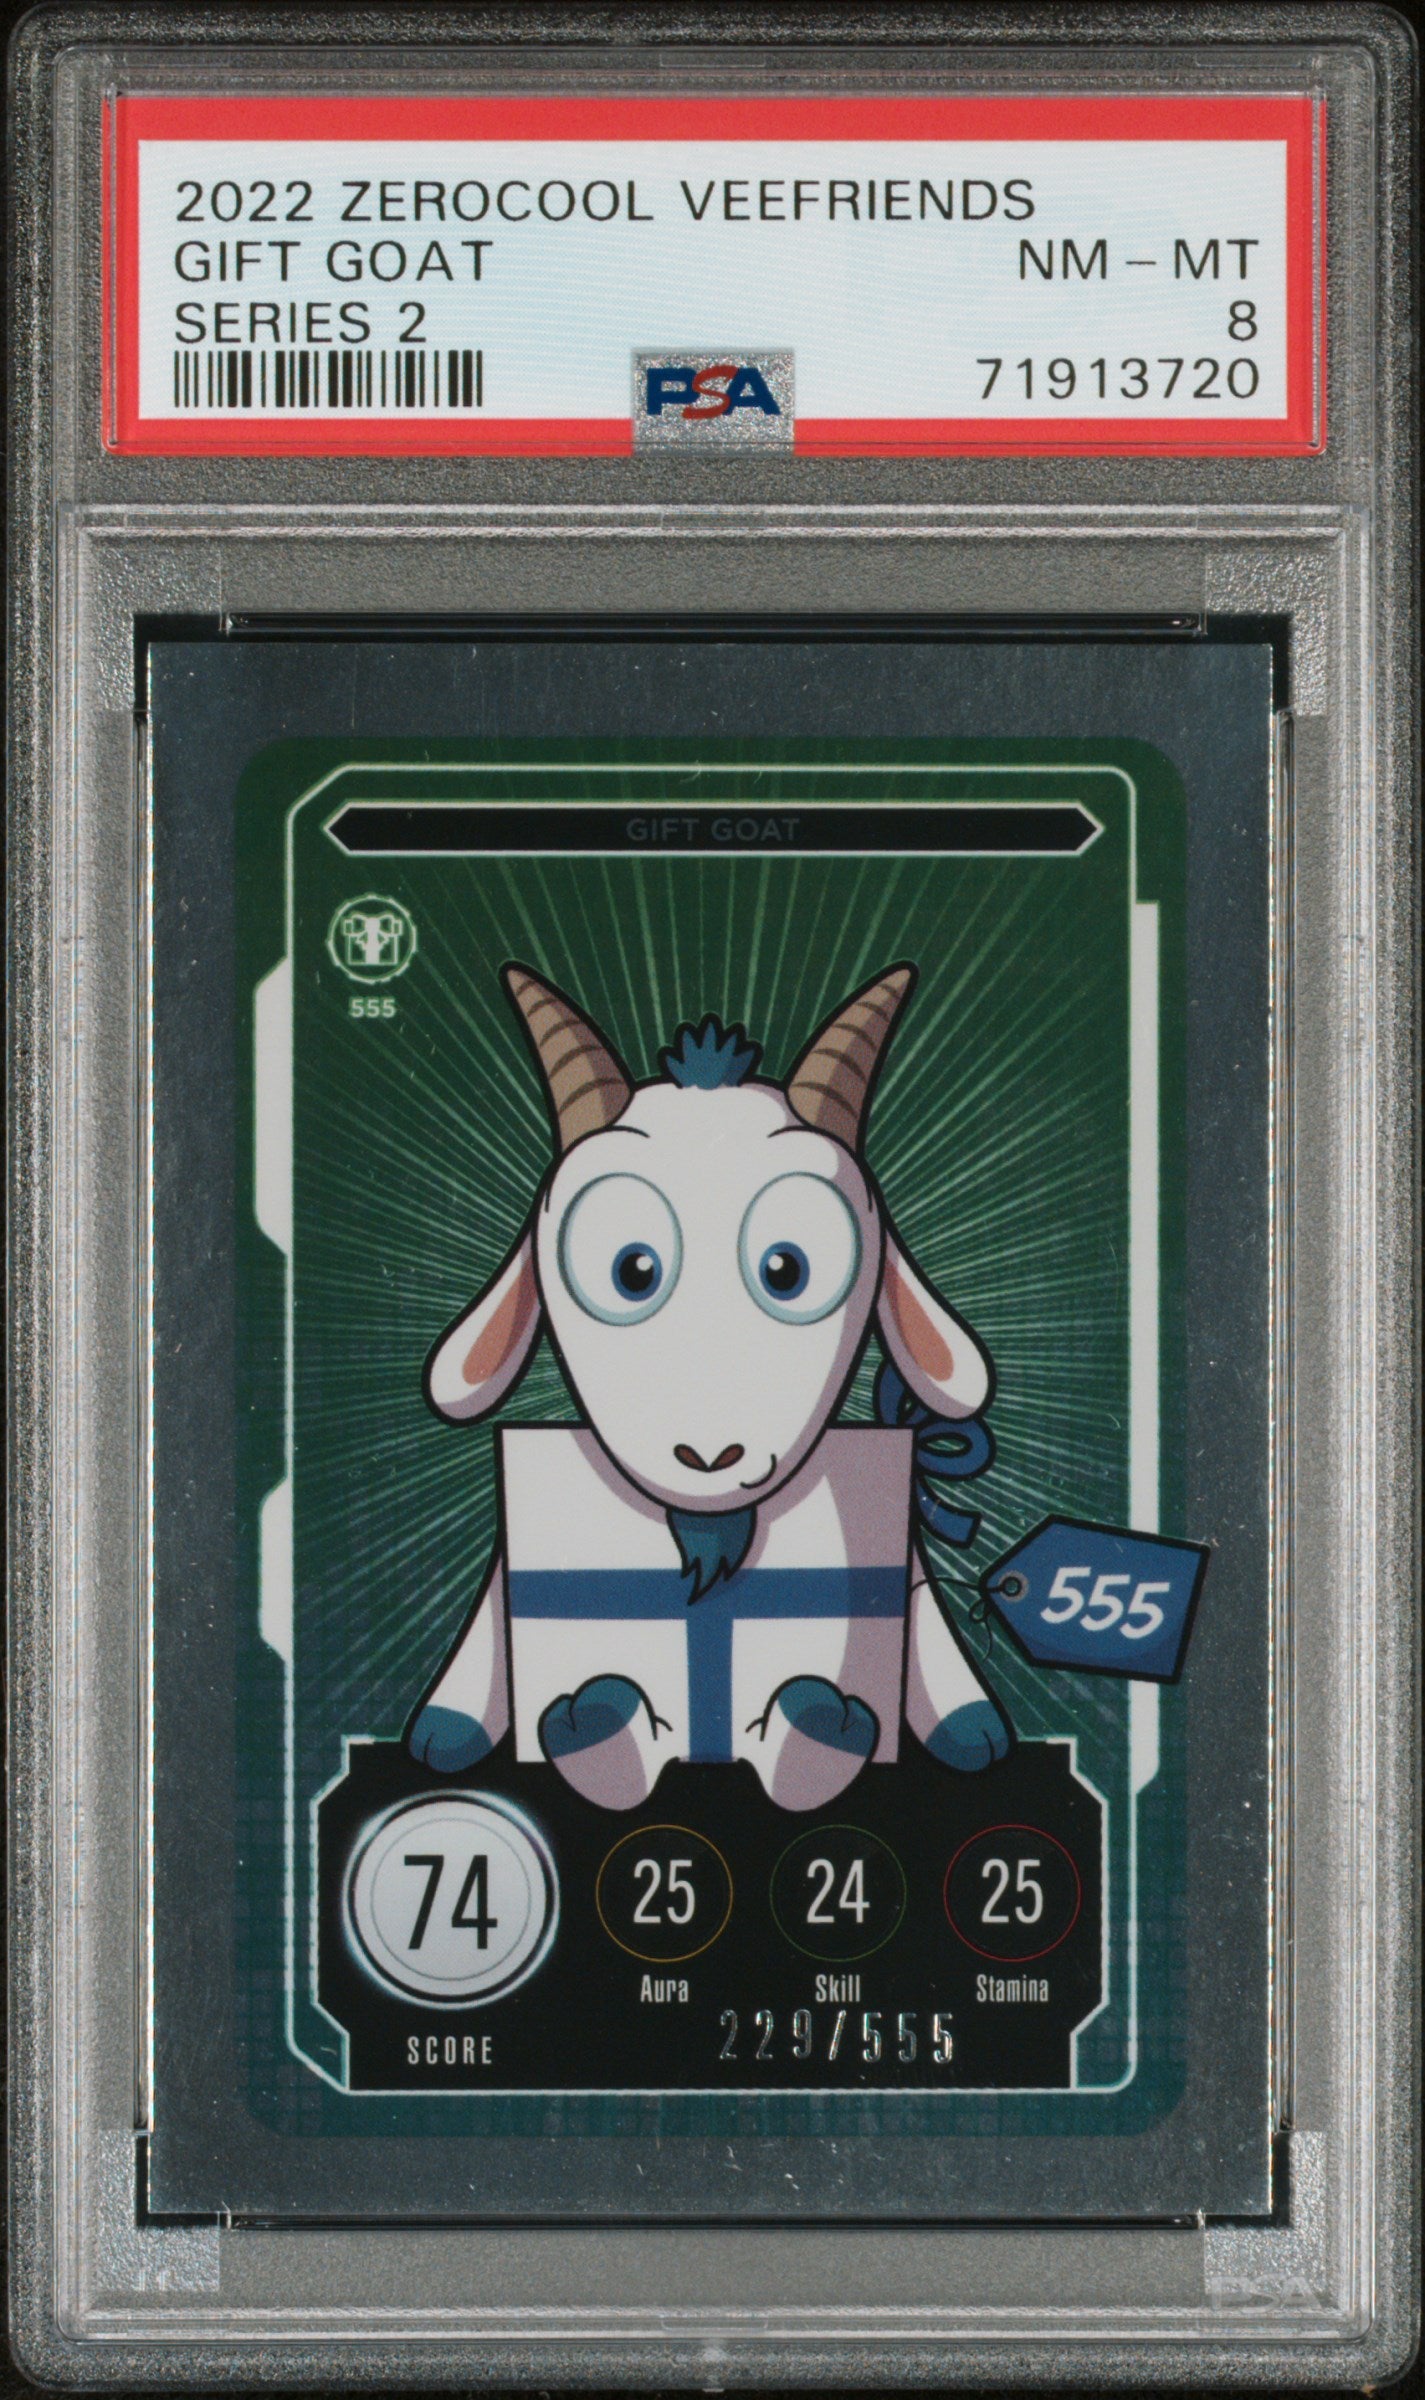 Gift Goat 2022 Zerocool Veefriends Series 2 Series 2 229/555 Psa 8